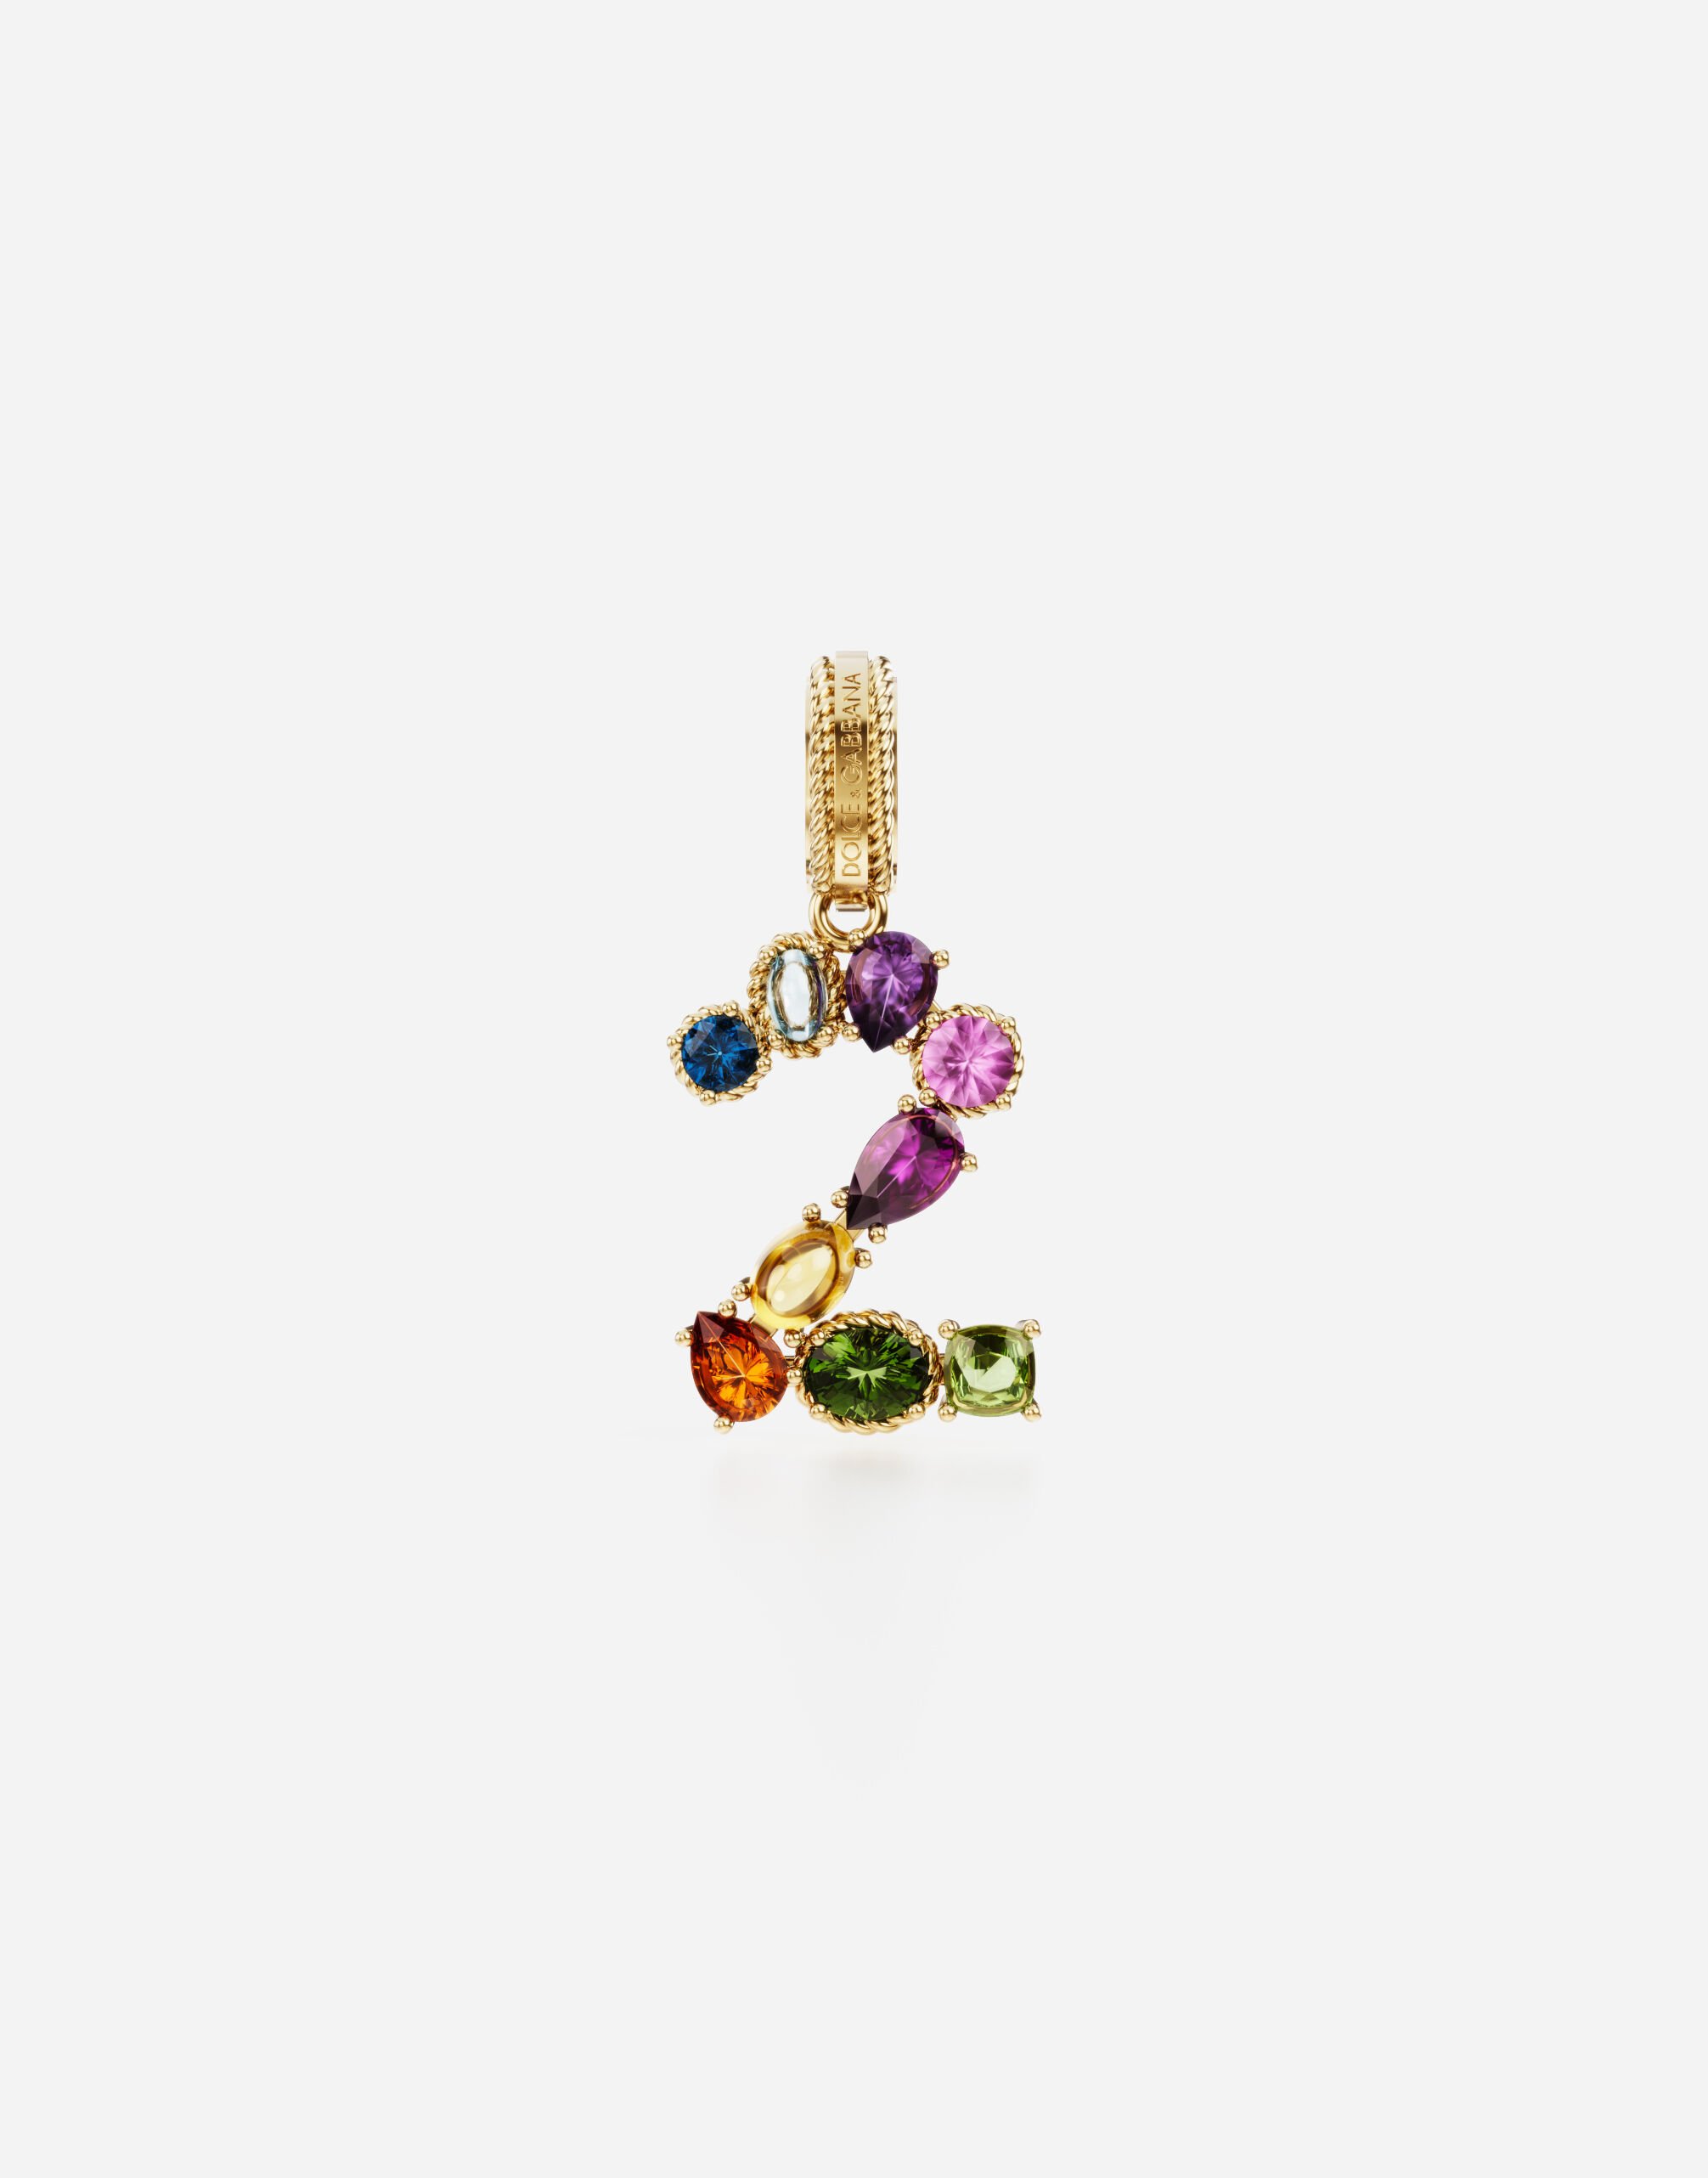 Dolce & Gabbana Anhänger „Rainbow“ aus 18 kt Gelbgold mit mehrfarbigen Edelsteinen, die die Zahl 2 darstellen GOLD WAMR2GWMIXS